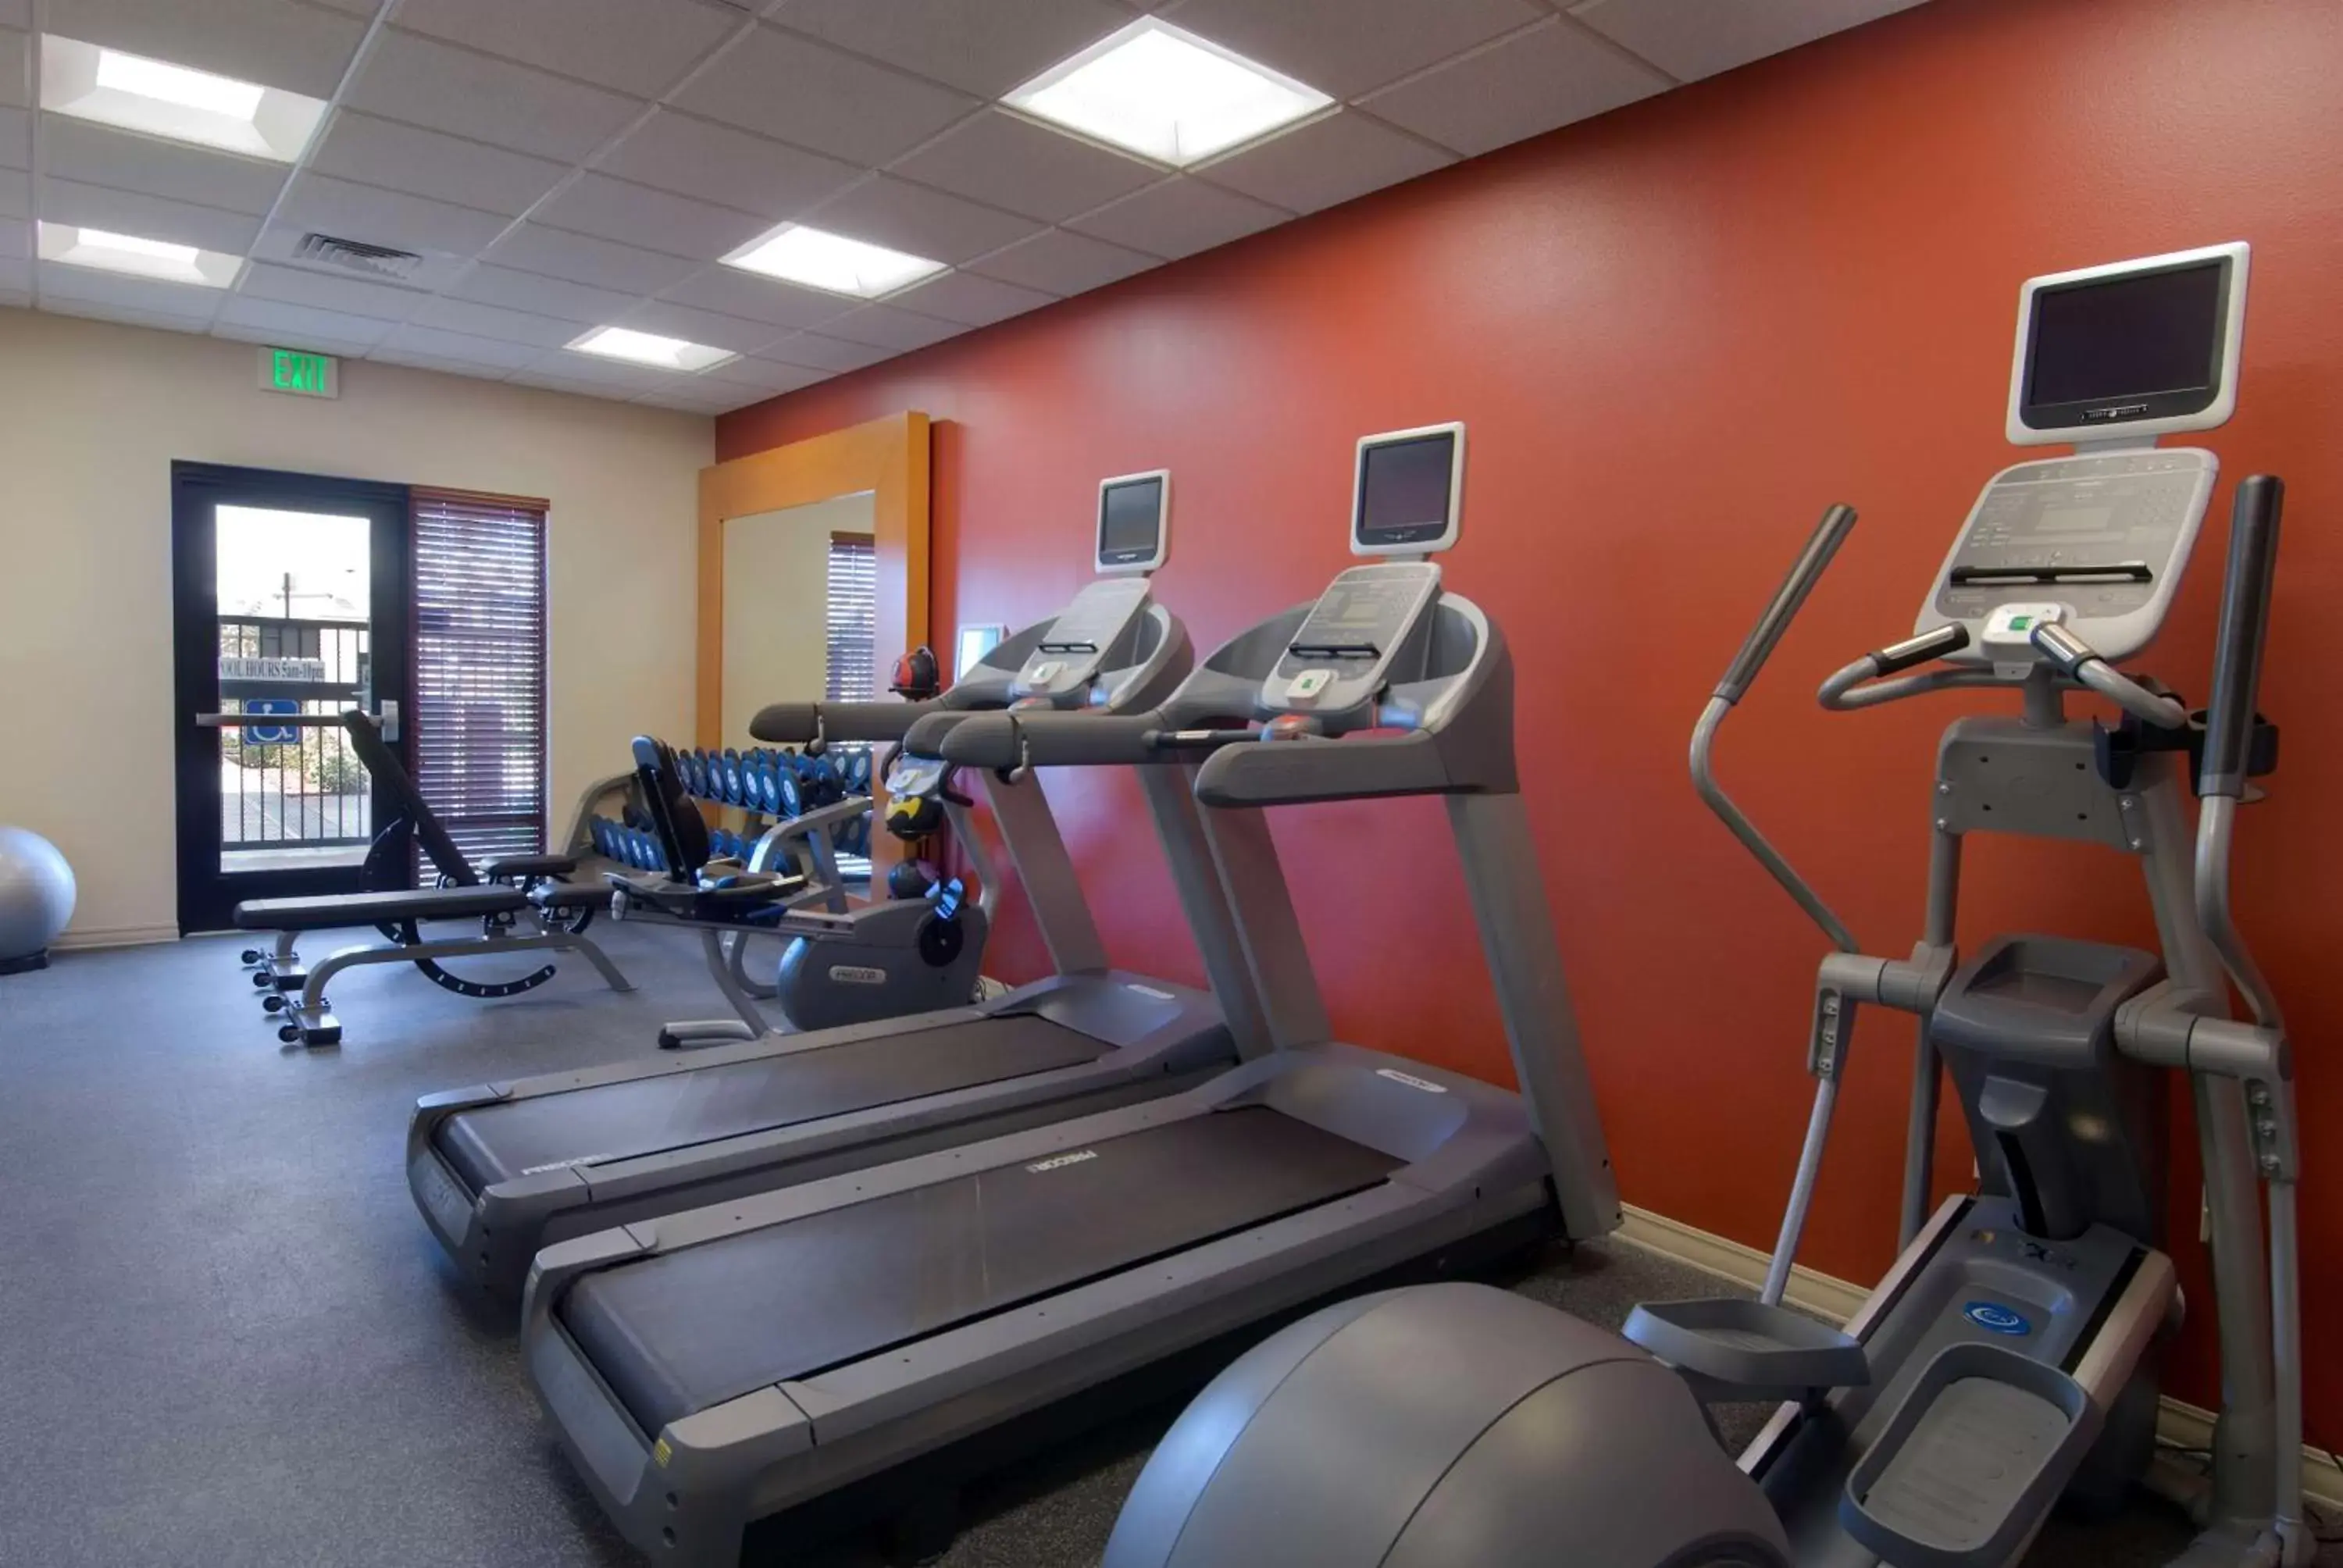 Fitness centre/facilities, Fitness Center/Facilities in Hilton Garden Inn Sacramento Elk Grove